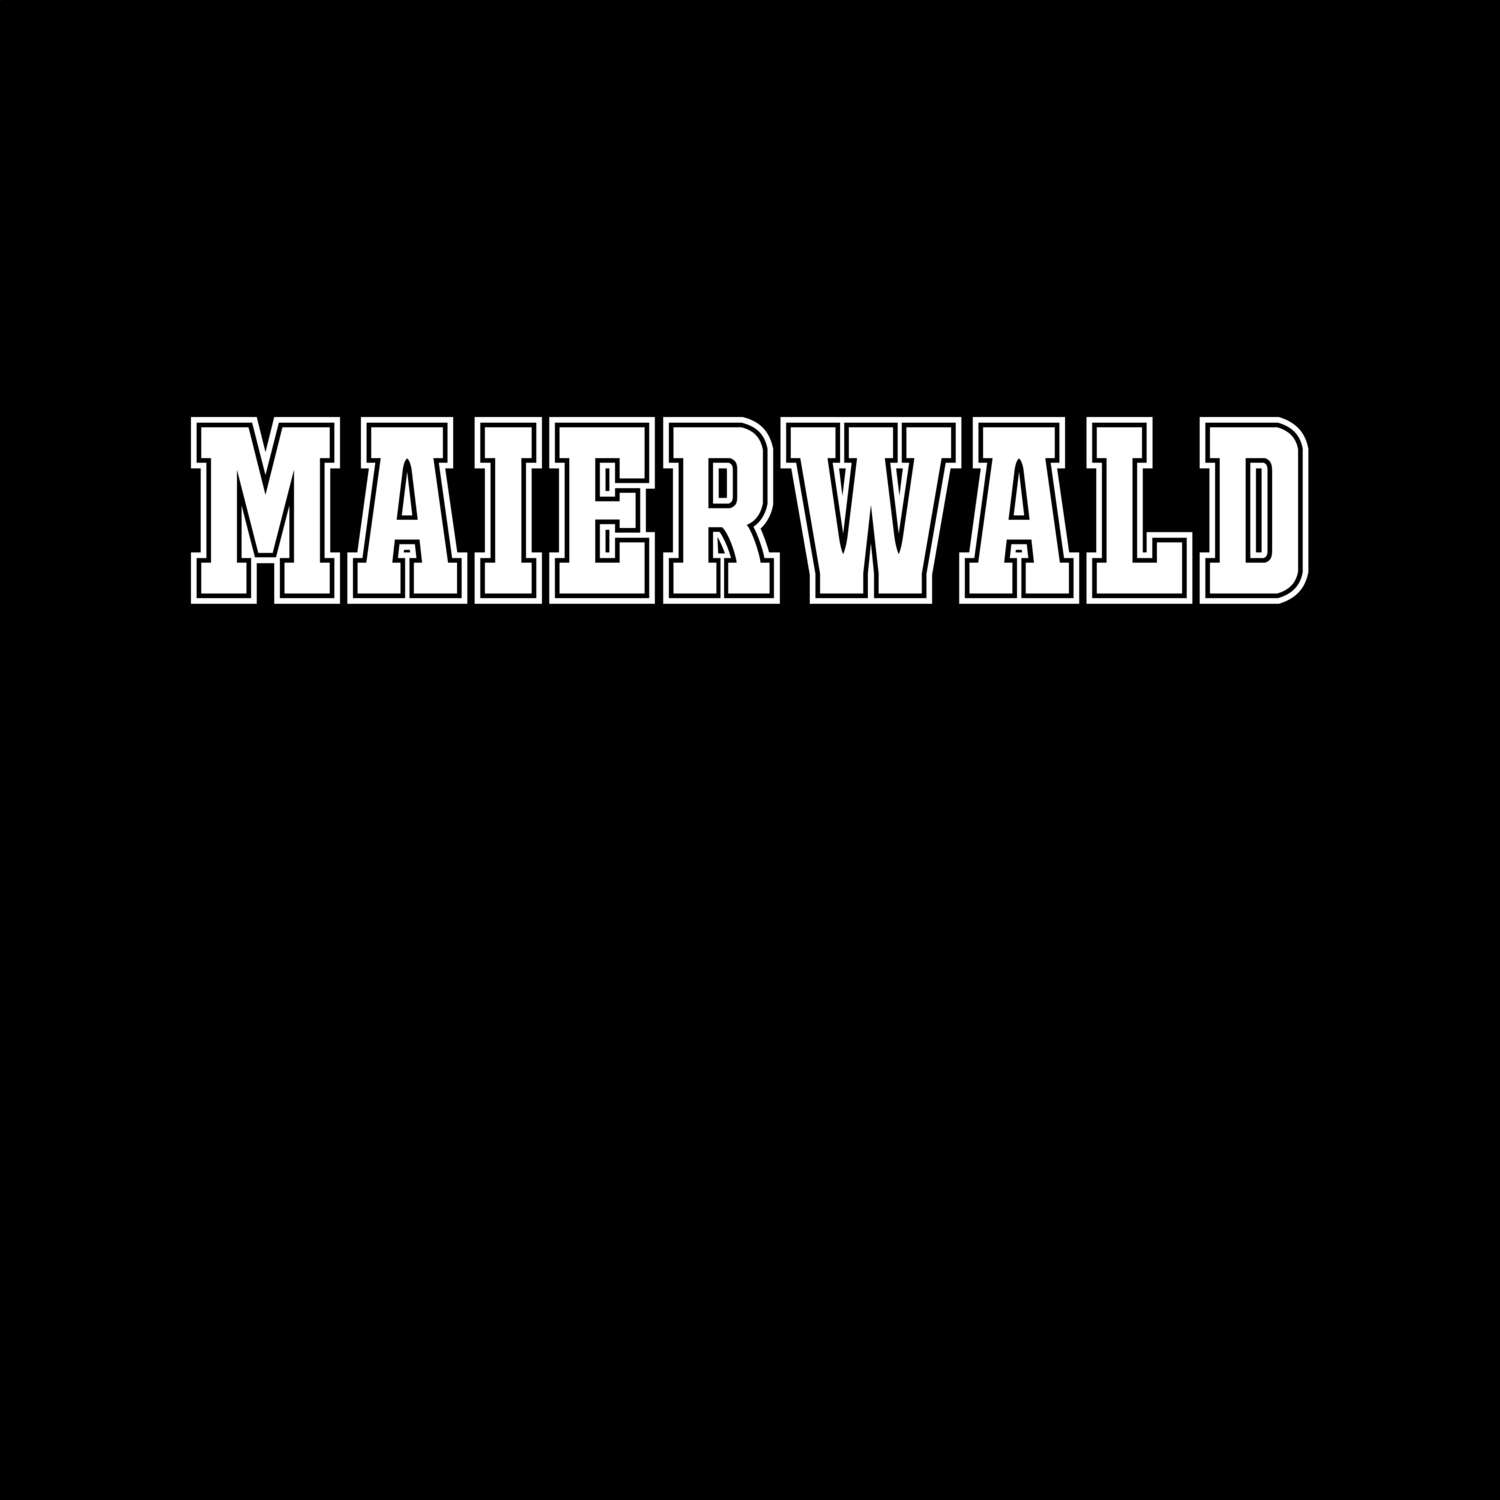 Maierwald T-Shirt »Classic«